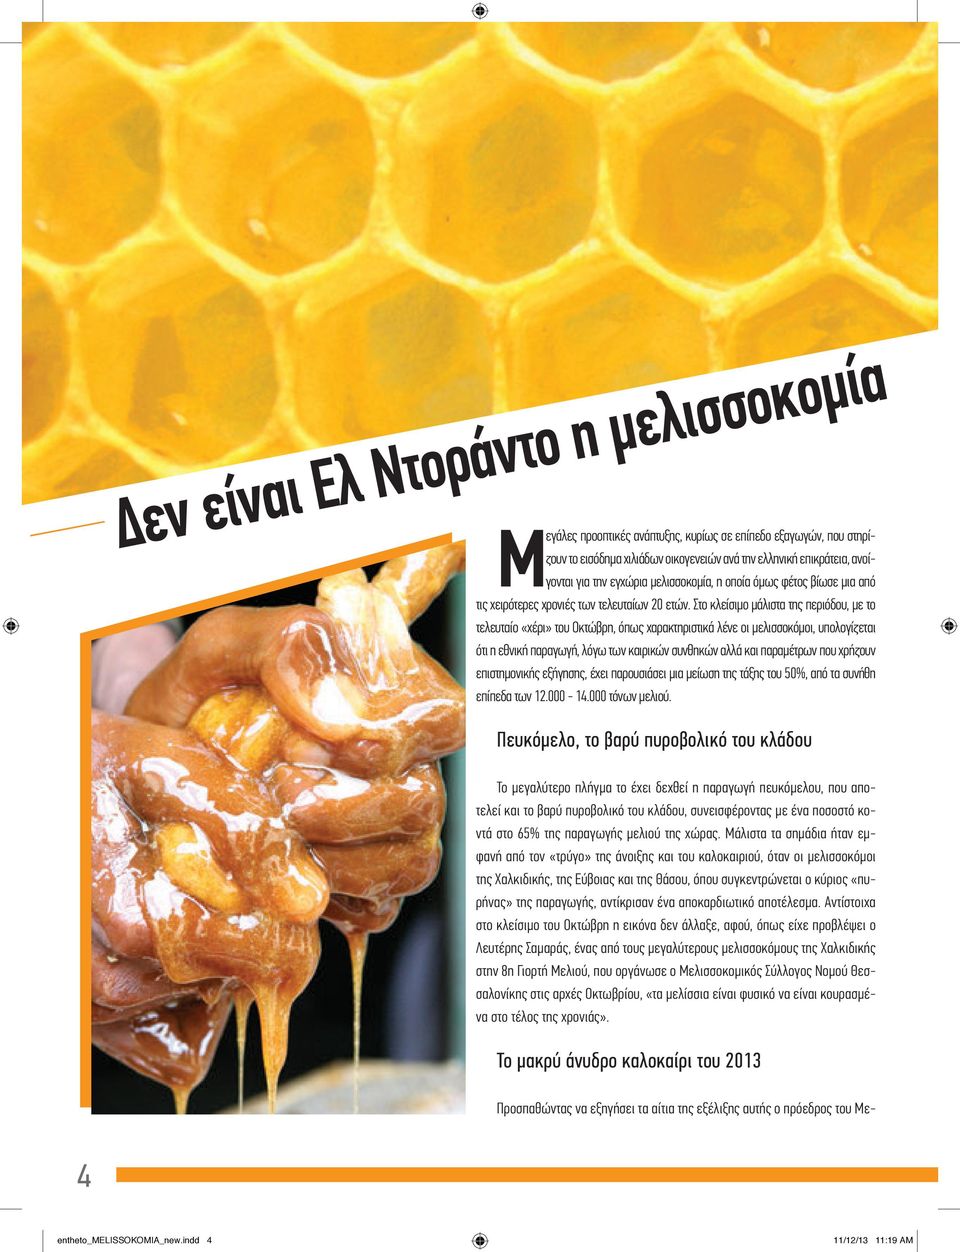 Στο κλείσιμο μάλιστα της περιόδου, με το τελευταίο «χέρι» του Οκτώβρη, όπως χαρακτηριστικά λένε οι μελισσοκόμοι, υπολογίζεται ότι η εθνική παραγωγή, λόγω των καιρικών συνθηκών αλλά και παραμέτρων που